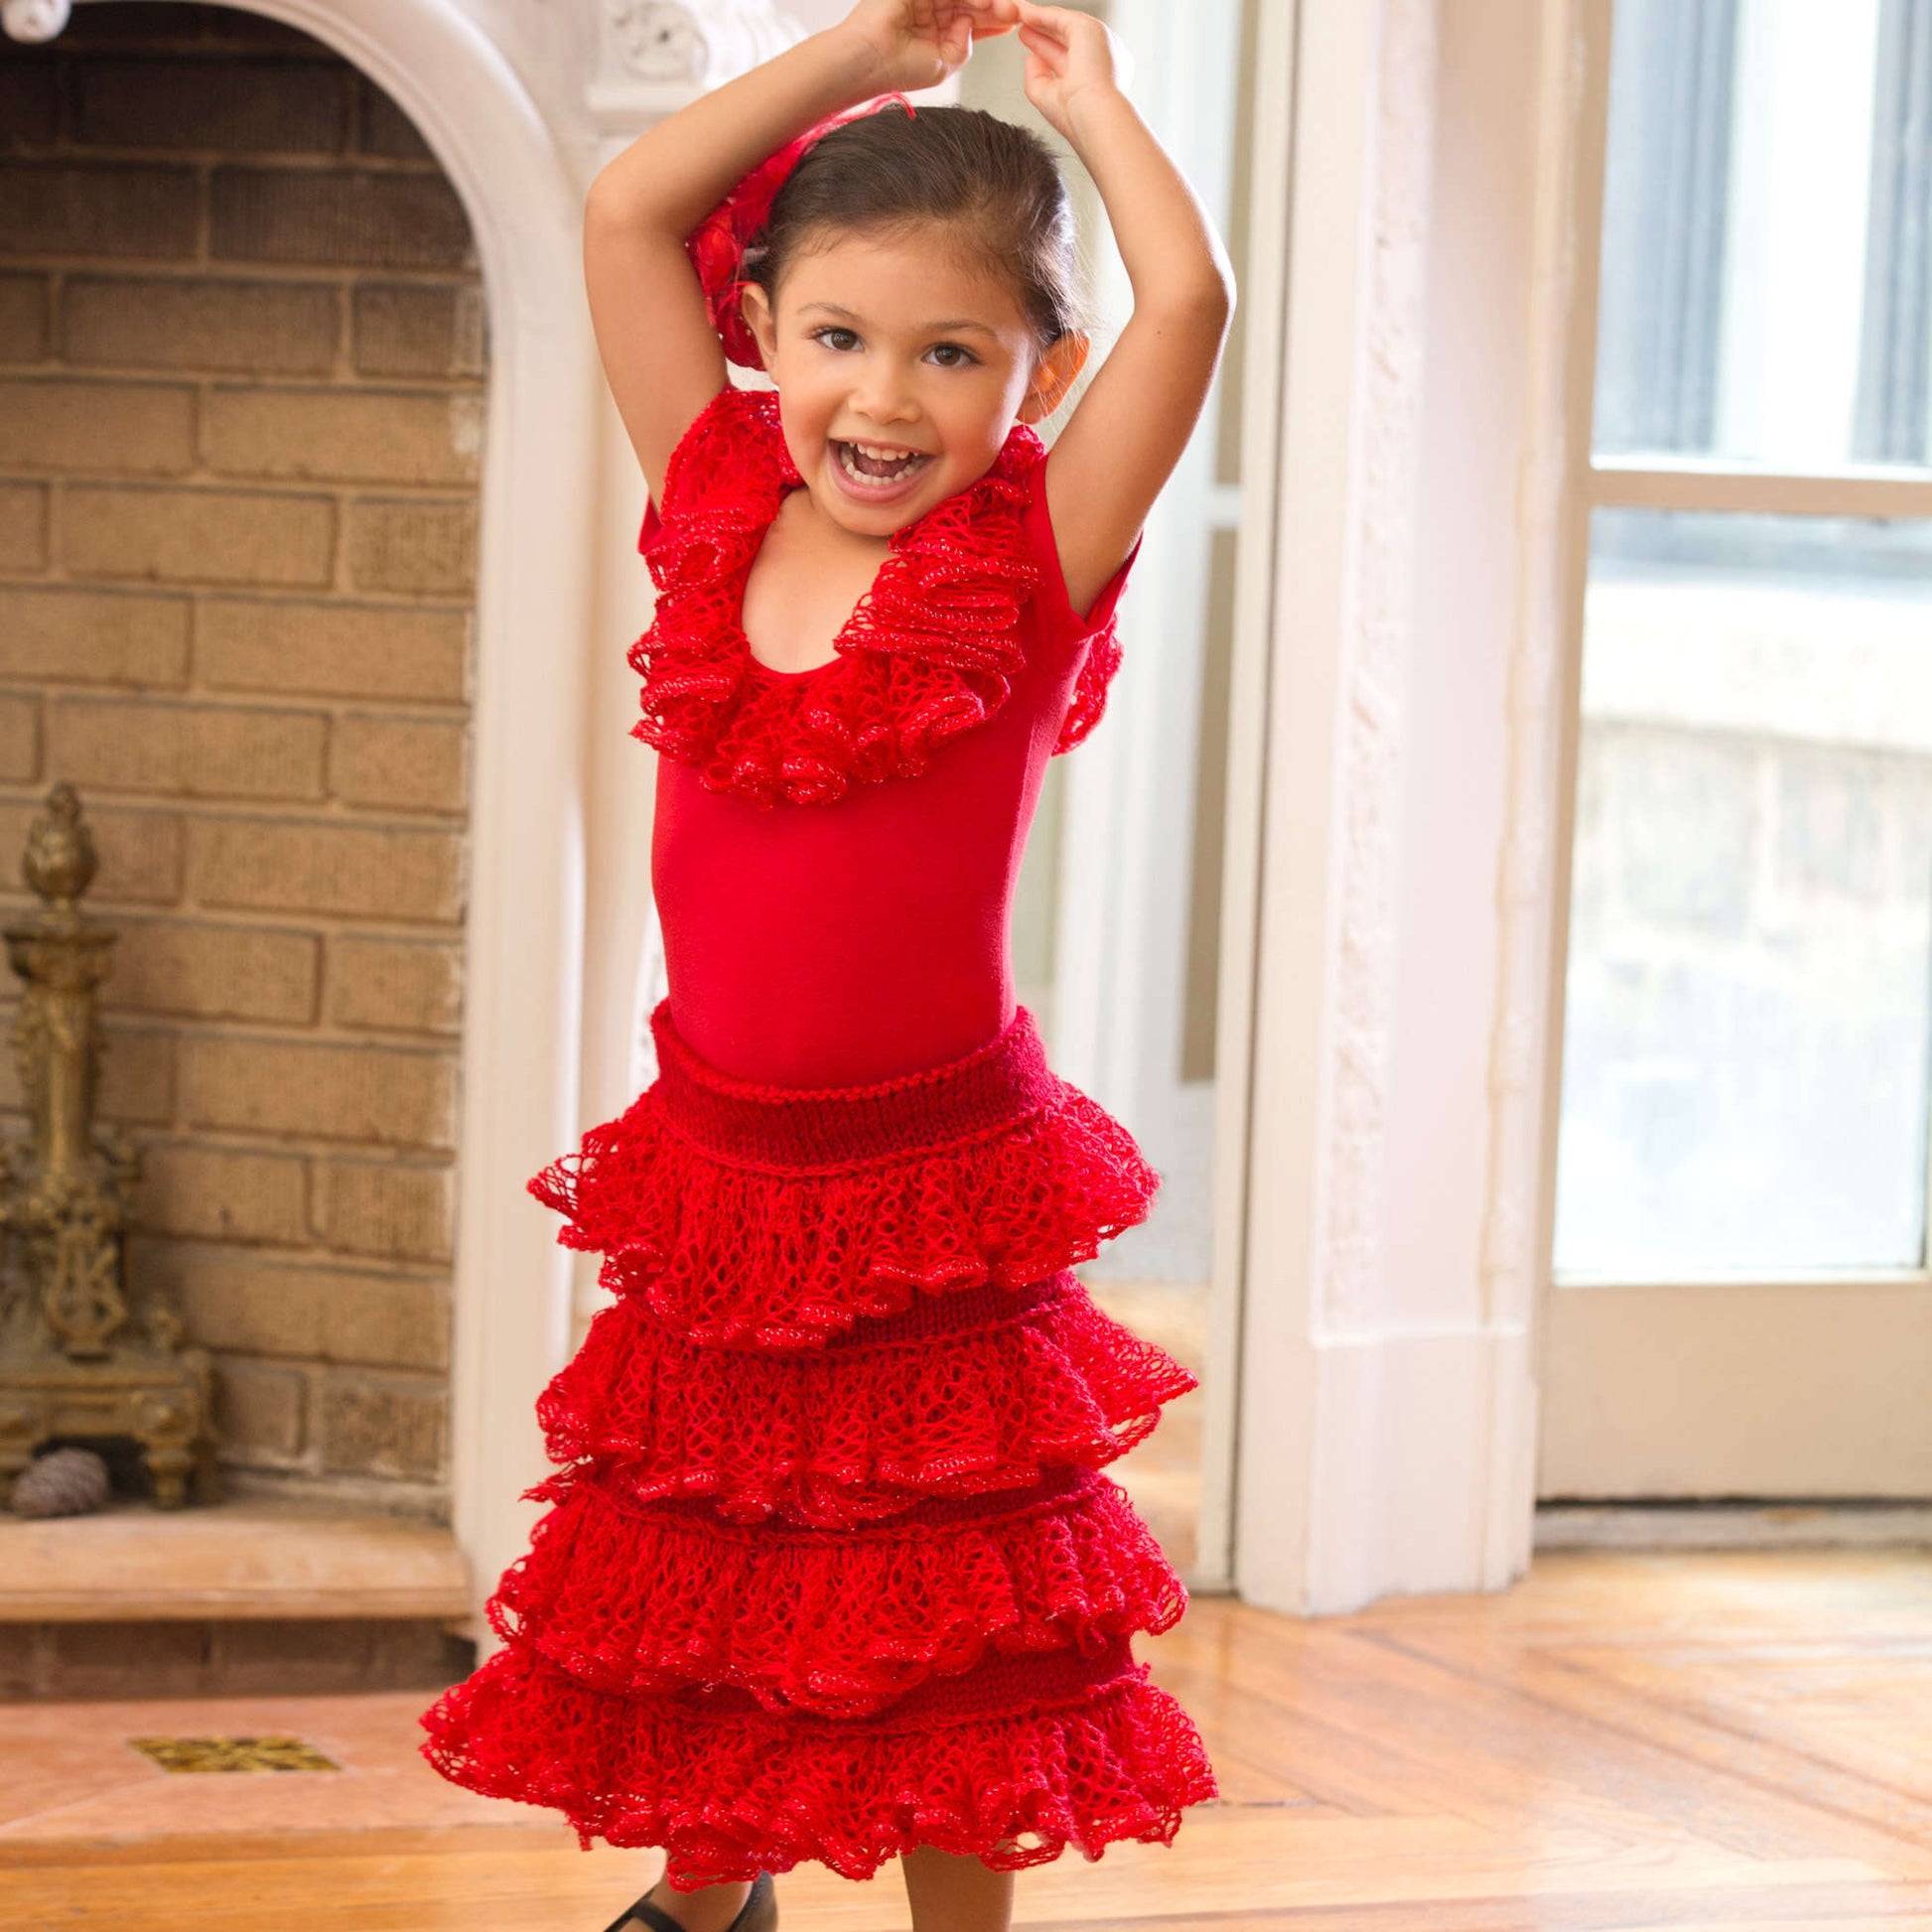 Free Red Heart Knit Little Flamenco Dancer Pattern